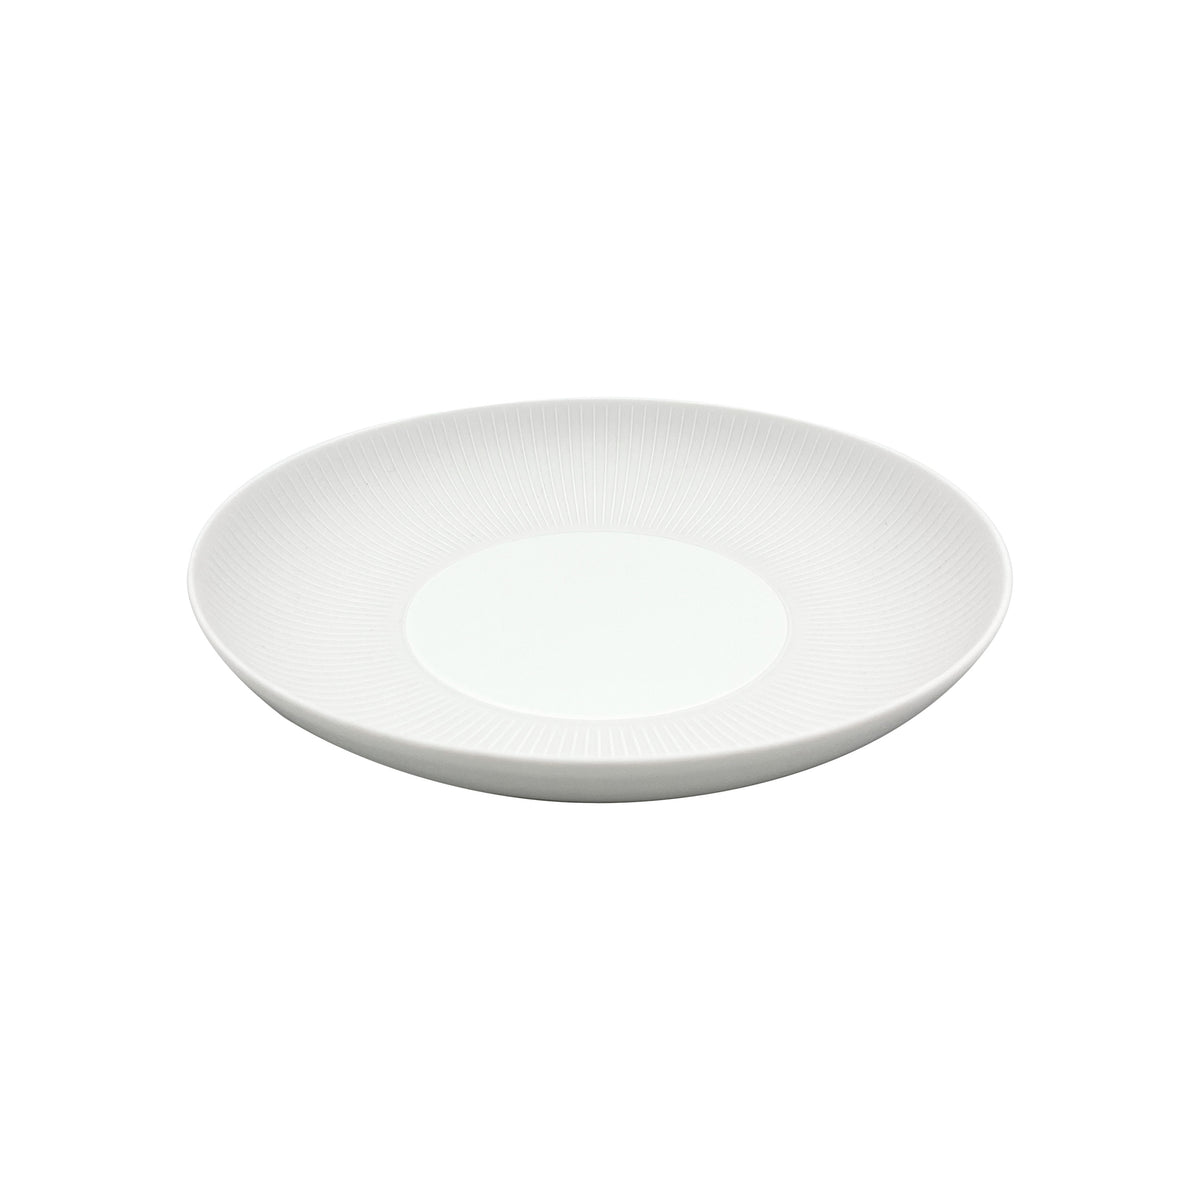 BOLERO White satin - Pasta plate MM